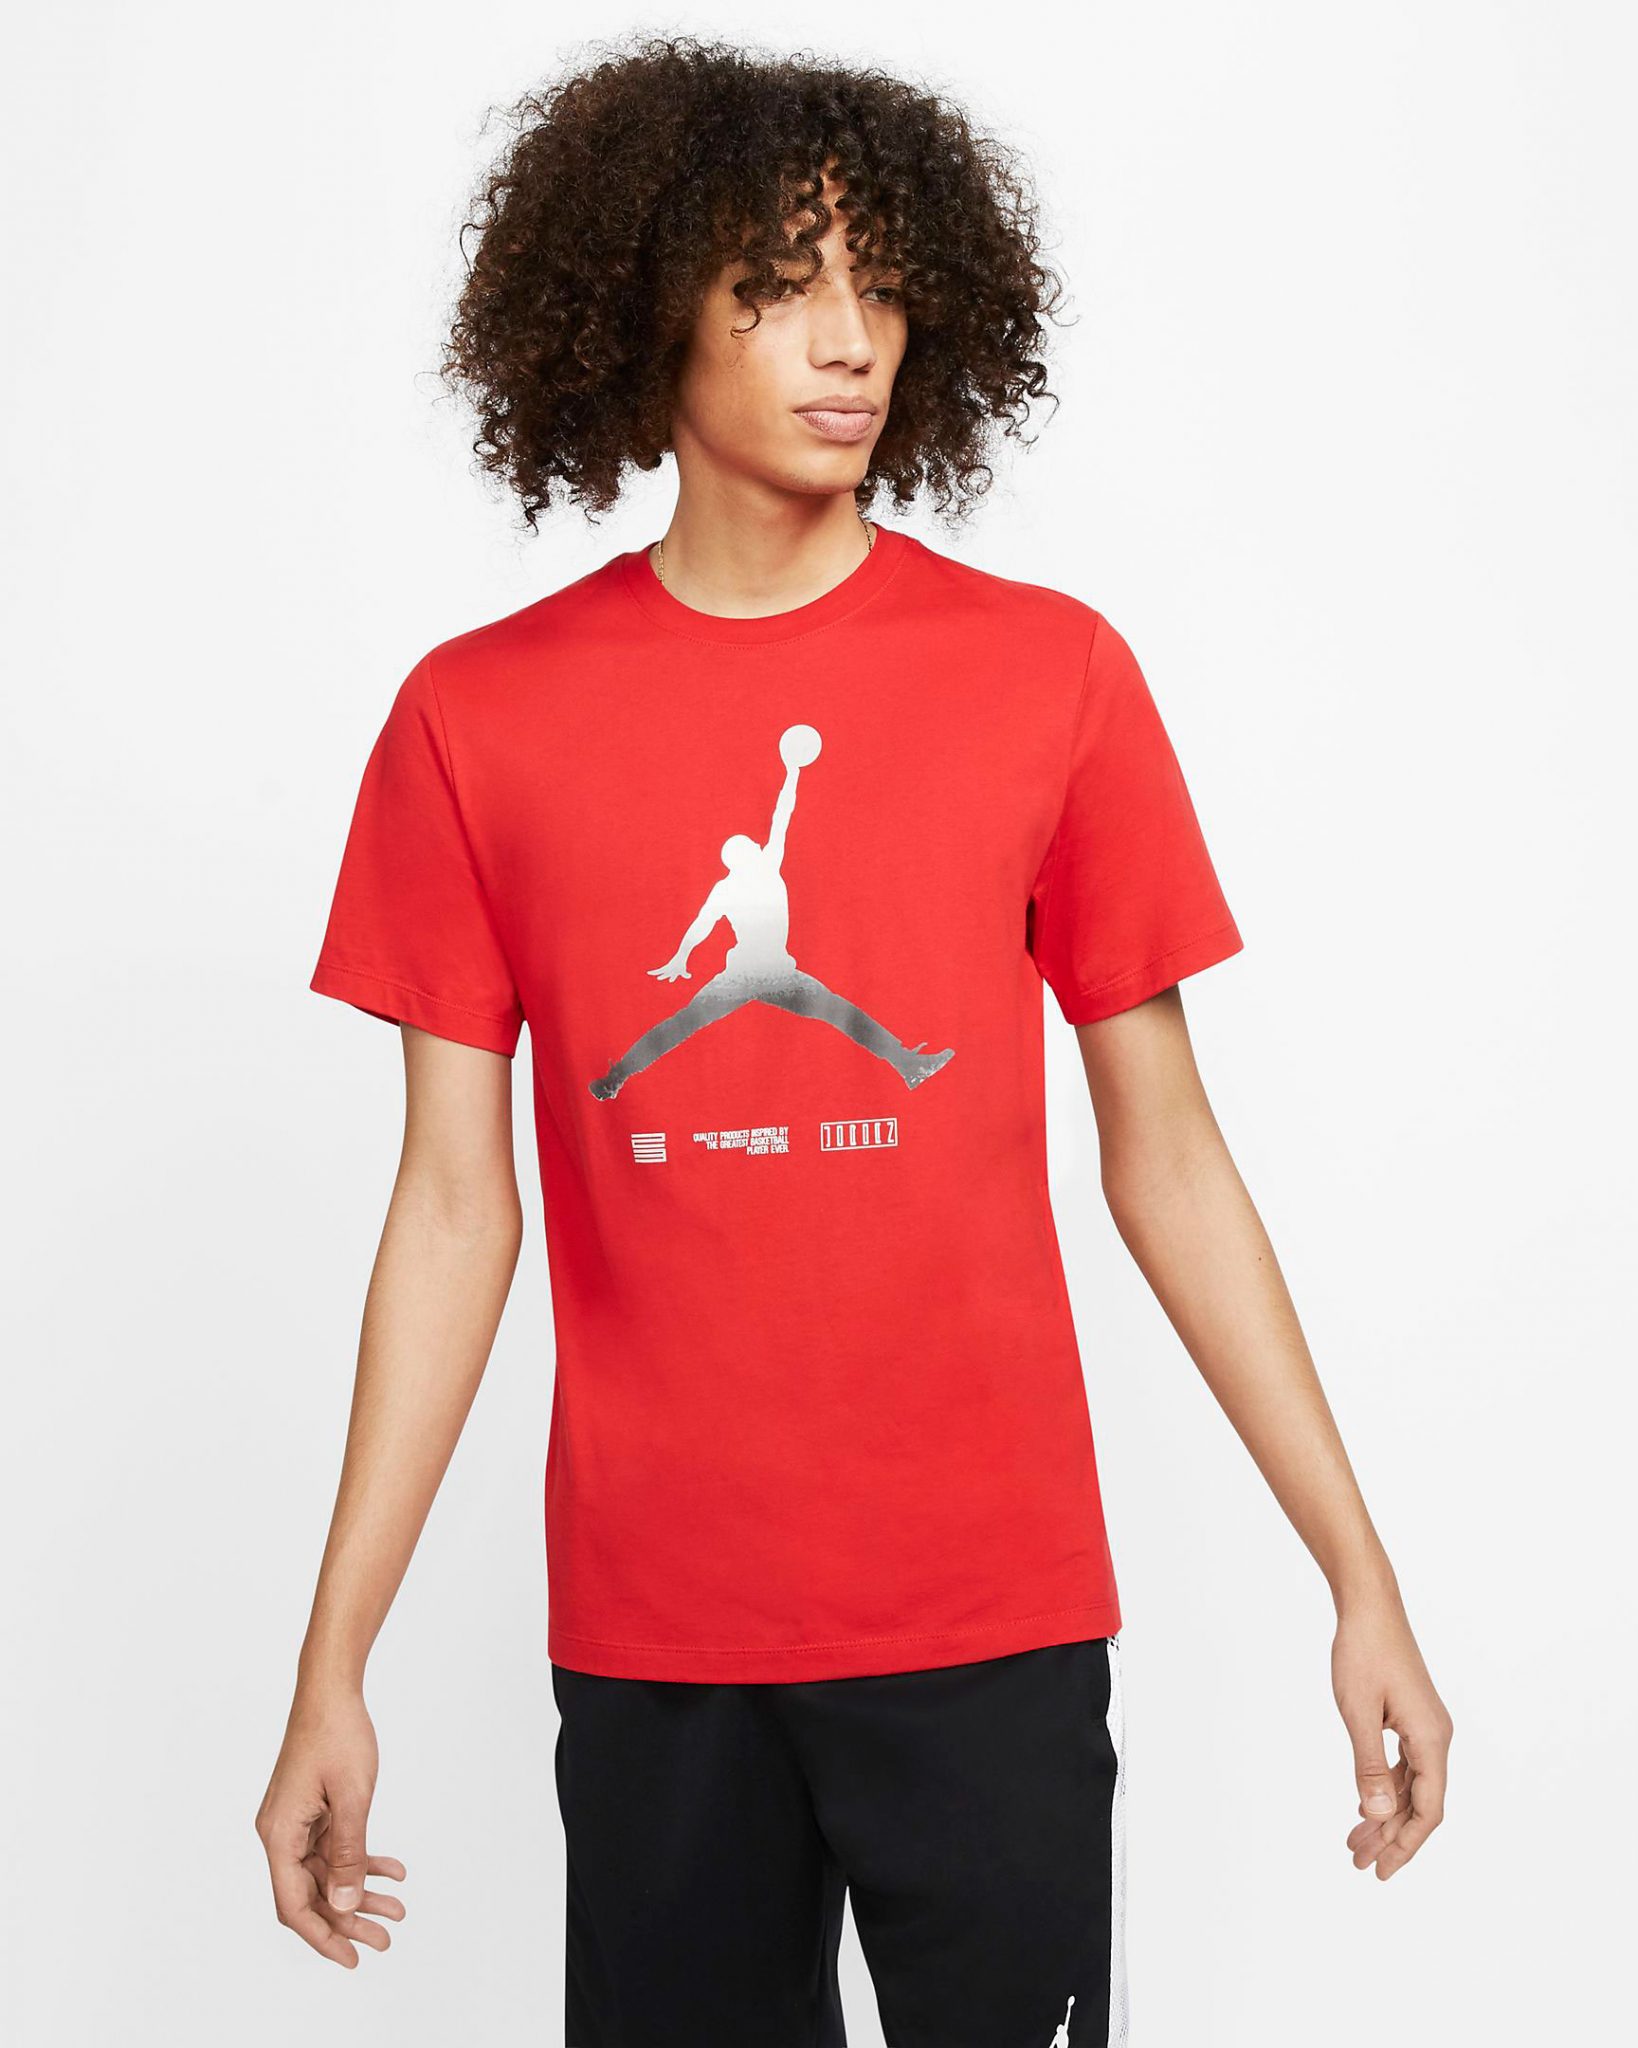 Air Jordan 11 Low IE Black Cement Clothing | SneakerFits.com